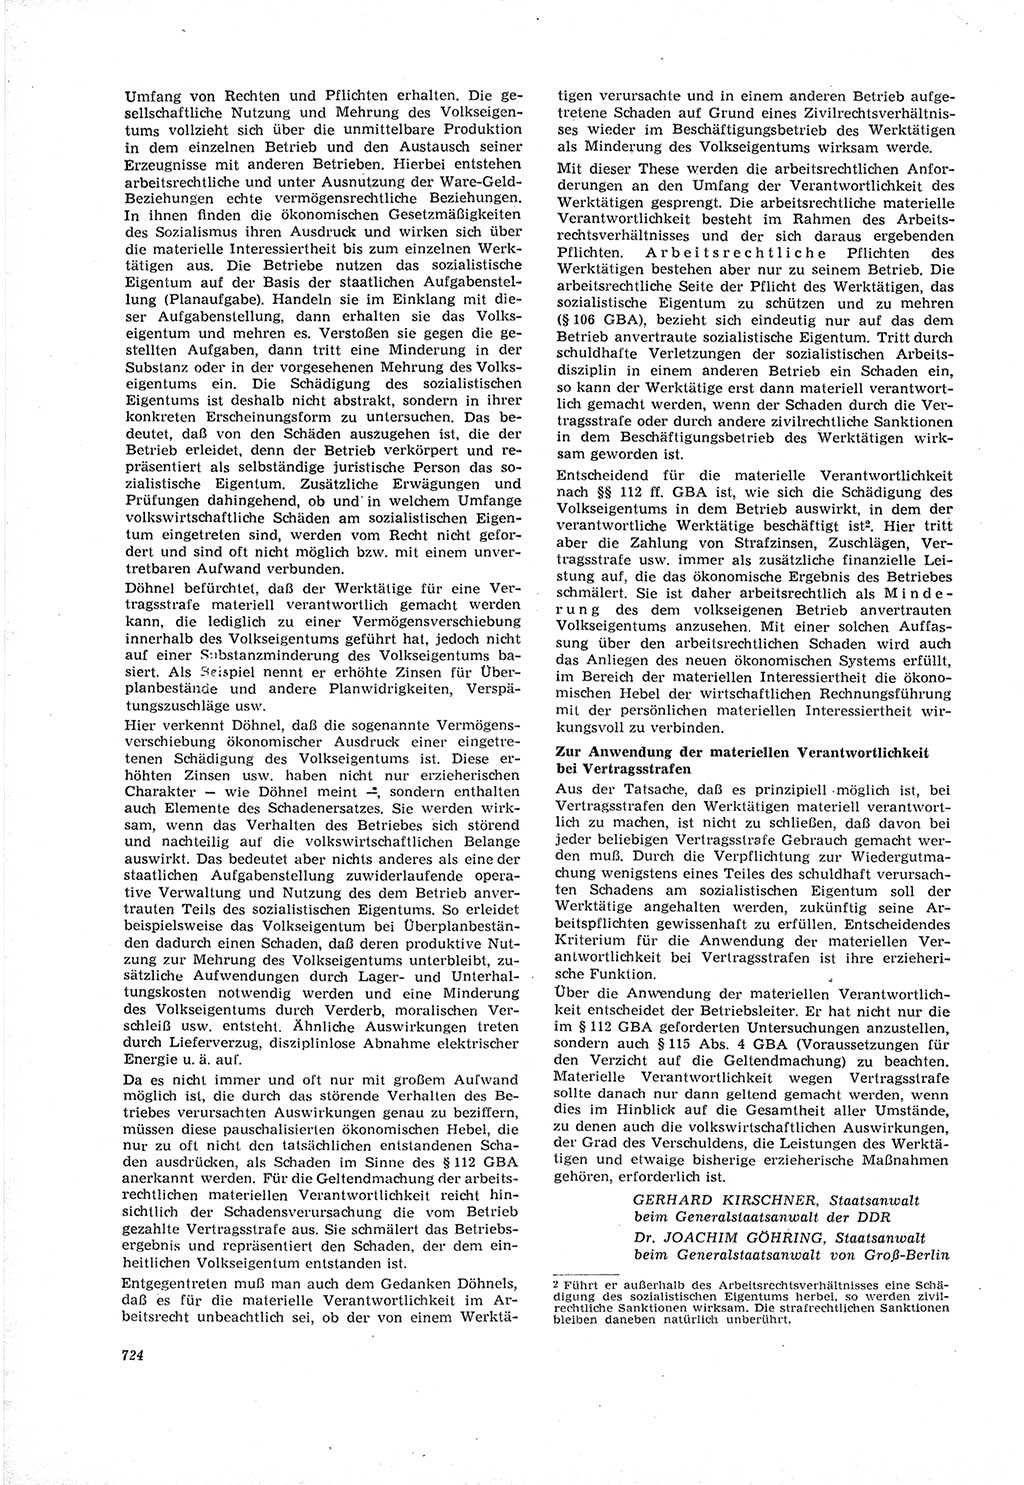 Neue Justiz (NJ), Zeitschrift für Recht und Rechtswissenschaft [Deutsche Demokratische Republik (DDR)], 18. Jahrgang 1964, Seite 724 (NJ DDR 1964, S. 724)